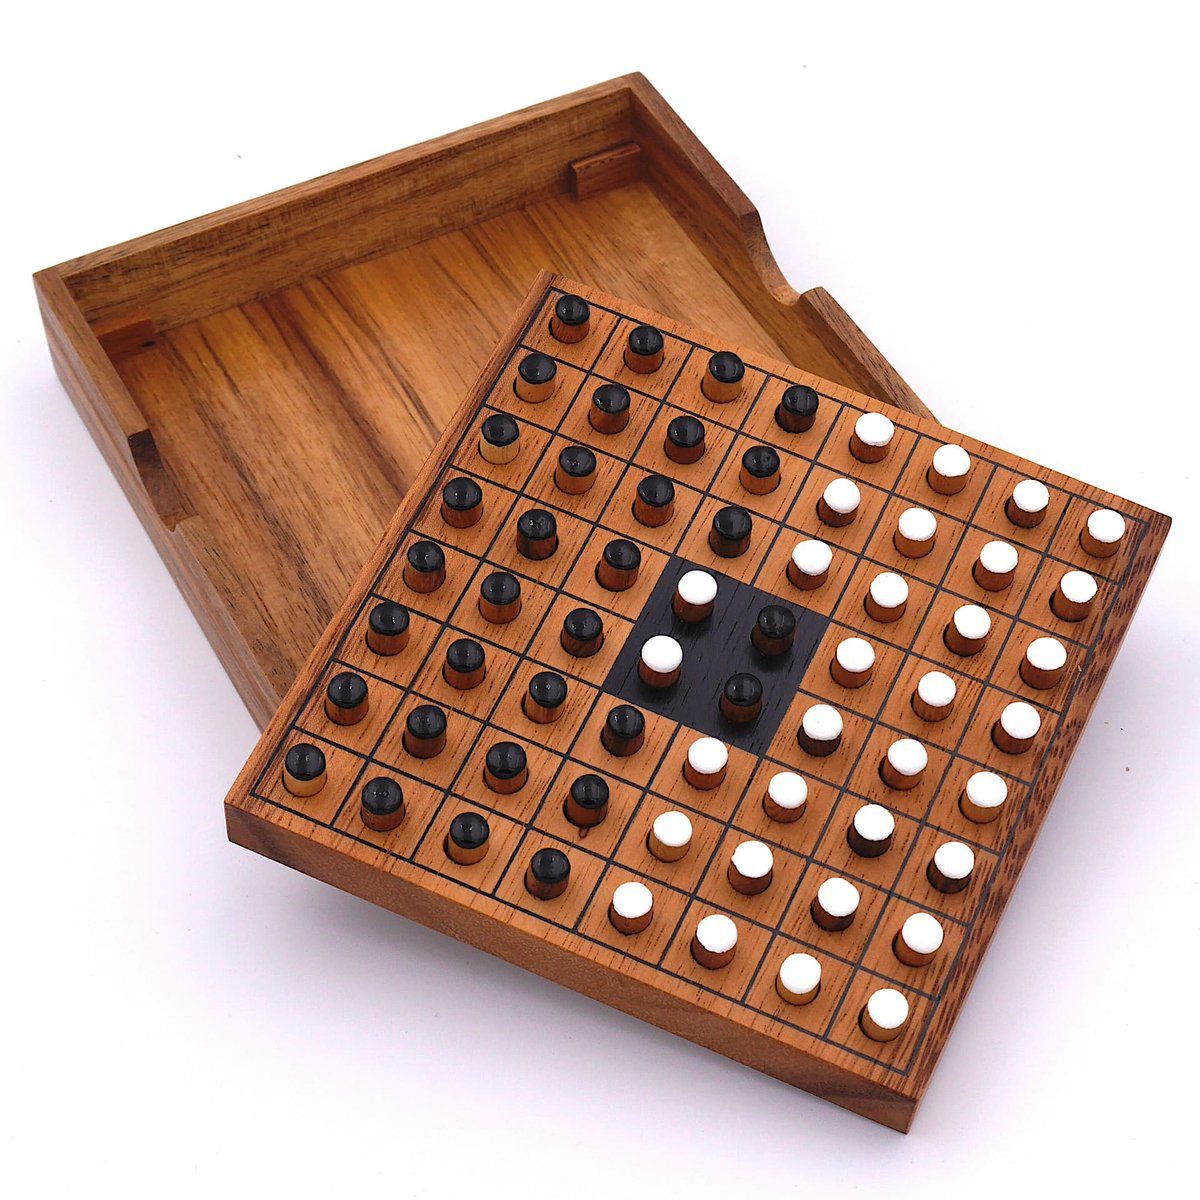 Interessantes Brettspiel Denkspiele – Holz, Reversi Holzspiel ROMBOL 2 aus Spiel, weiß/schwarz Personen Strategiespiel edlem für